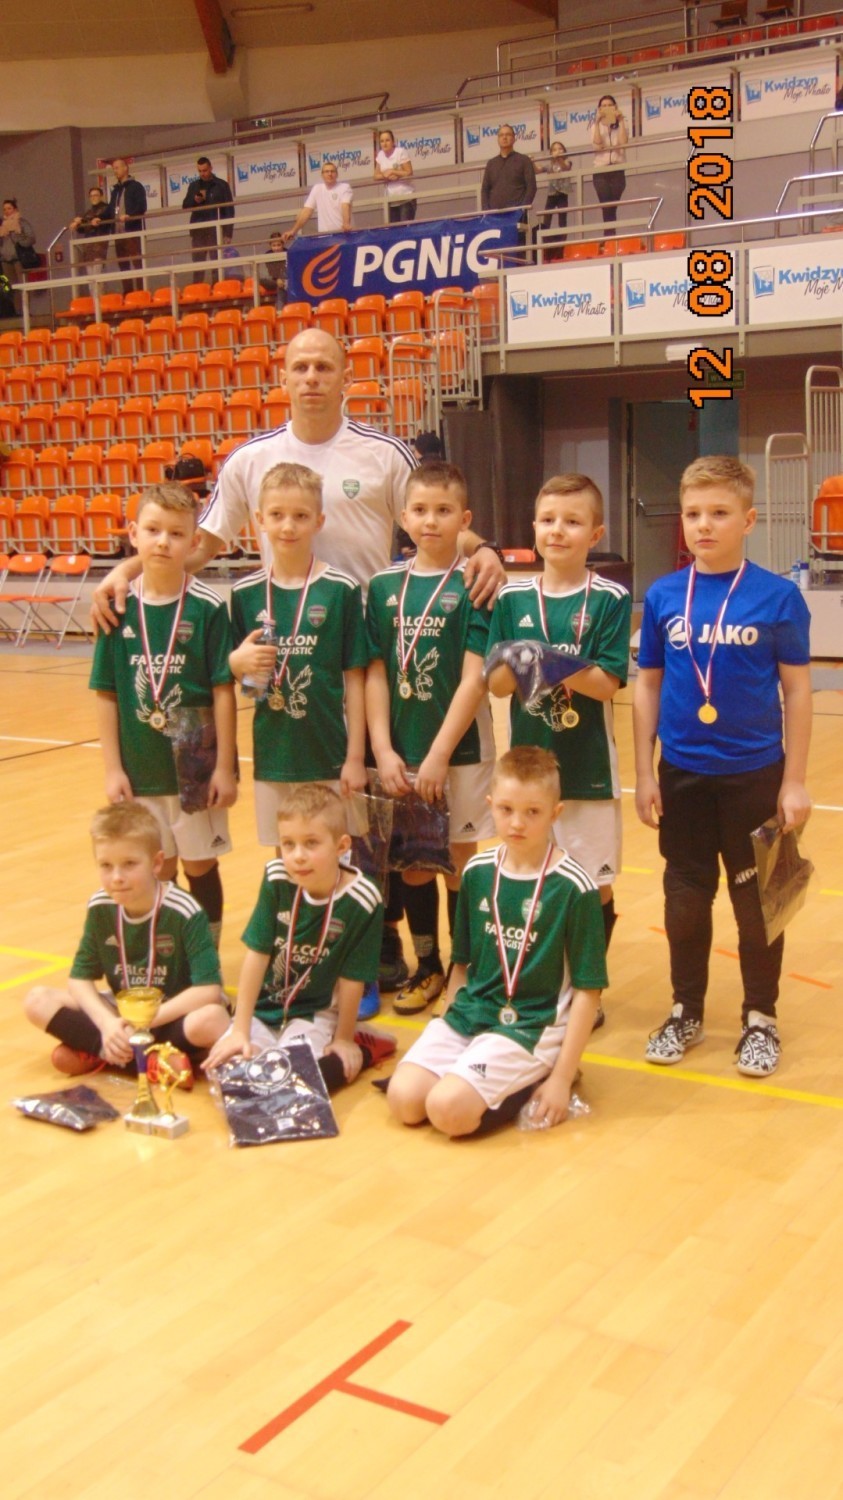 DSPN Kwidzyn Cup 2019. Młodzi piłkarze rywalizowali o puchar burmistrza